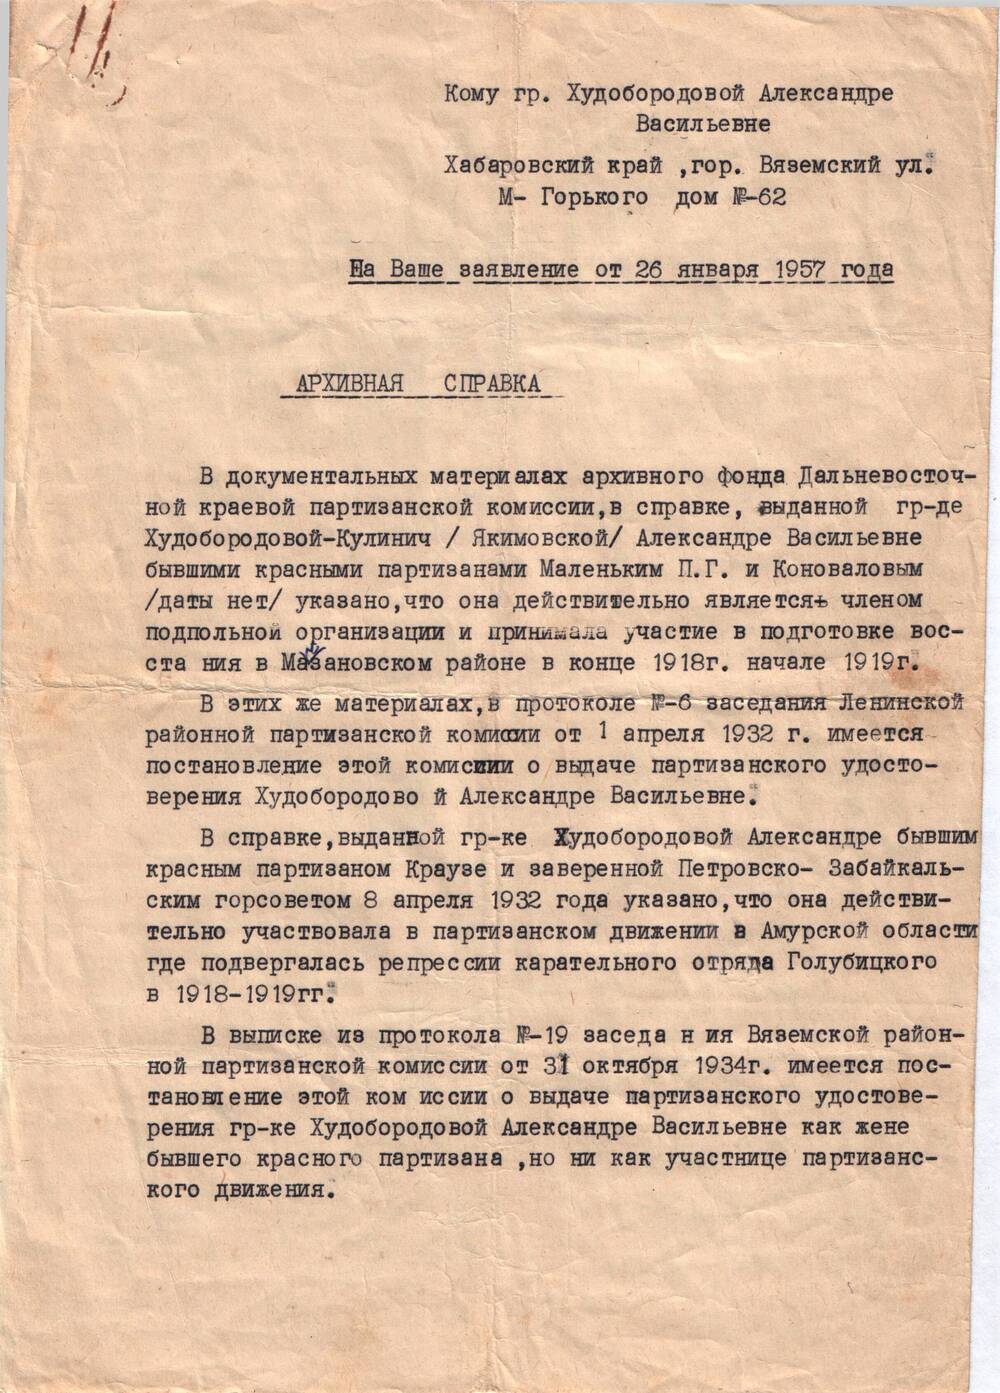 Справка архивная - подтверждение как участницы партизанского движения Худобородовой Александры Васильевны.